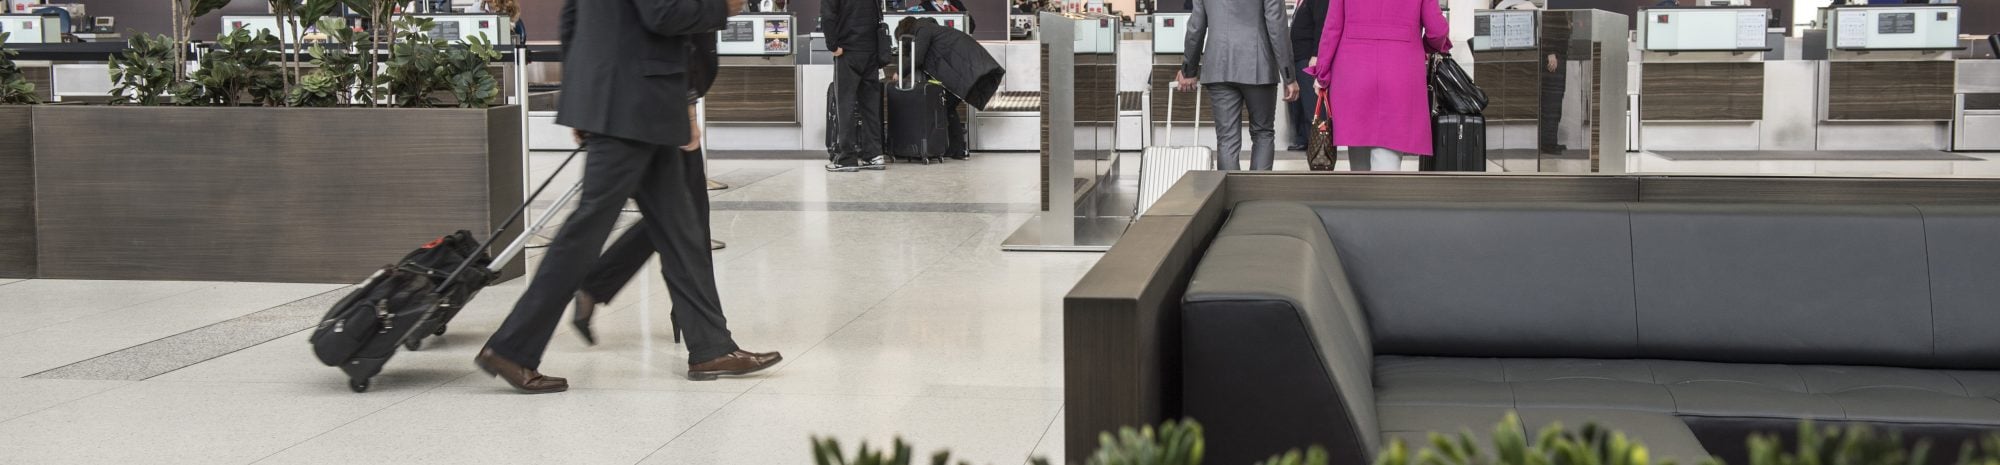 Air Canada n’accepte plus les paiements en espèces dans ses comptoirs d’aéroport aux États-Unis